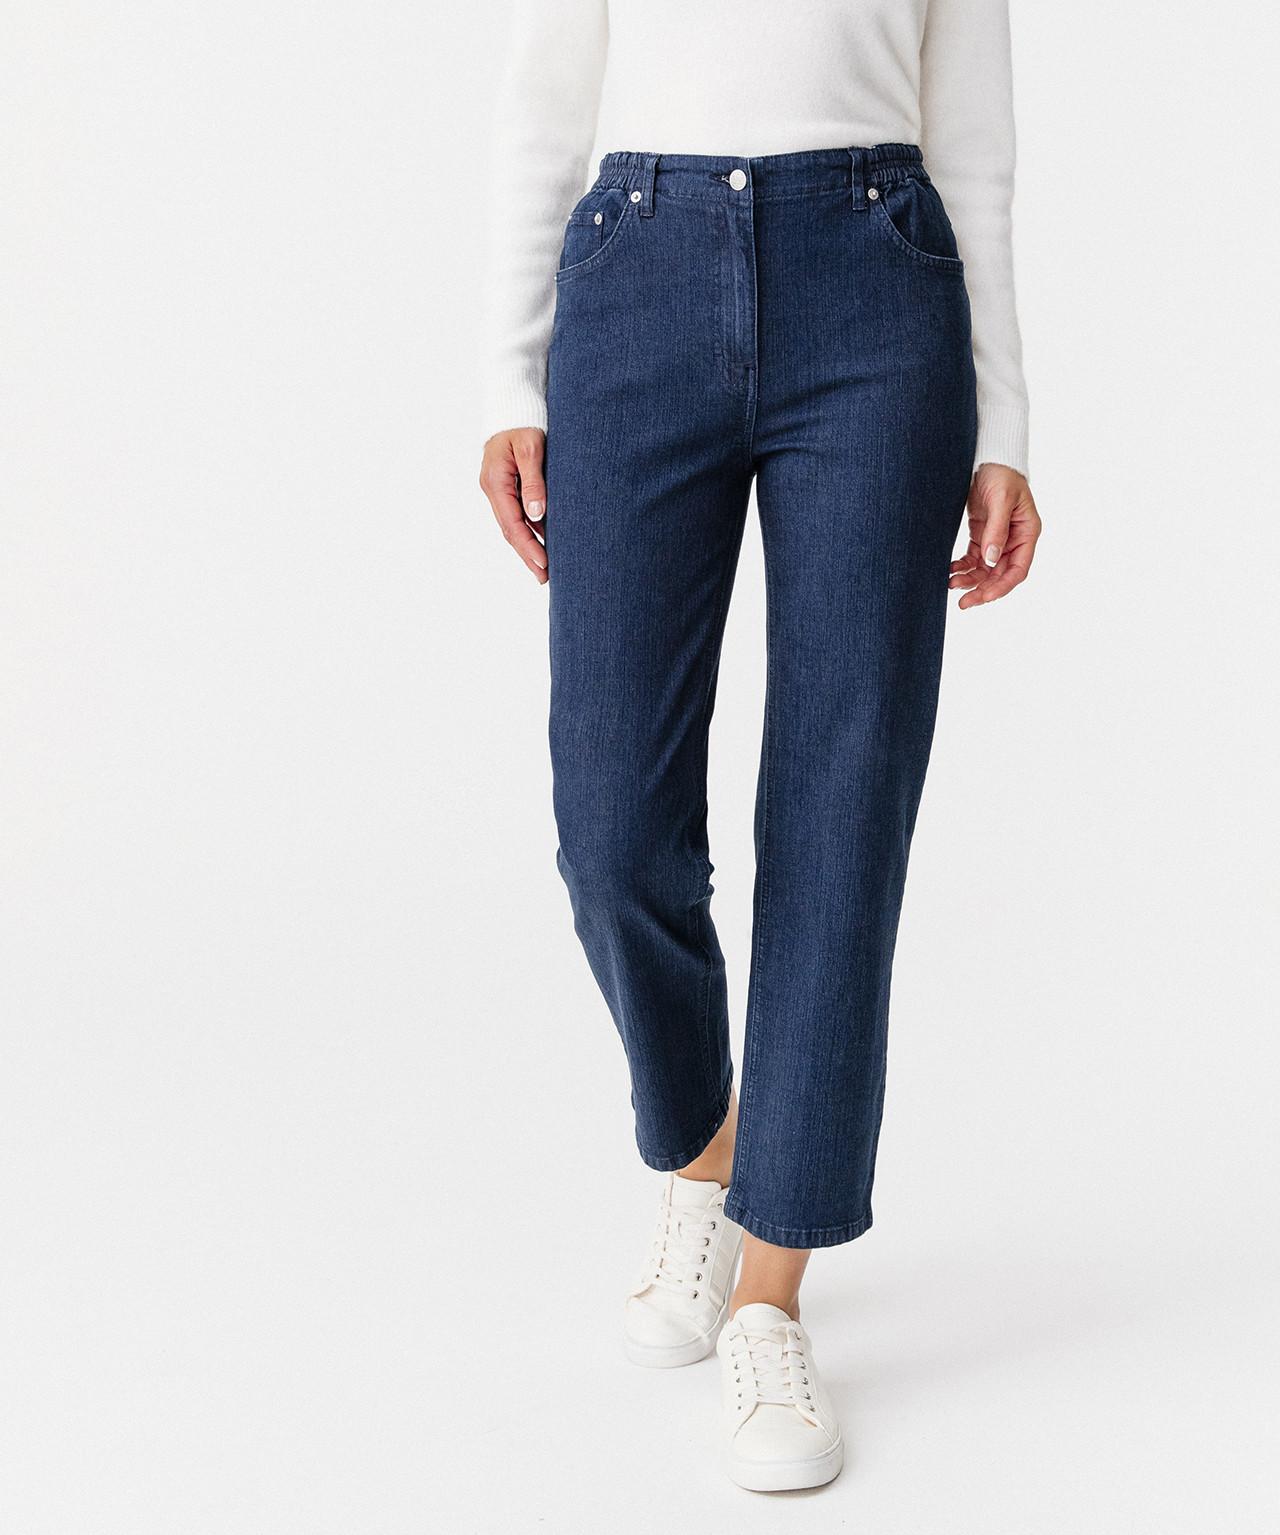 5-pocket-jeans In 2 Körpergrößen. Damen Blau 50 von Damart